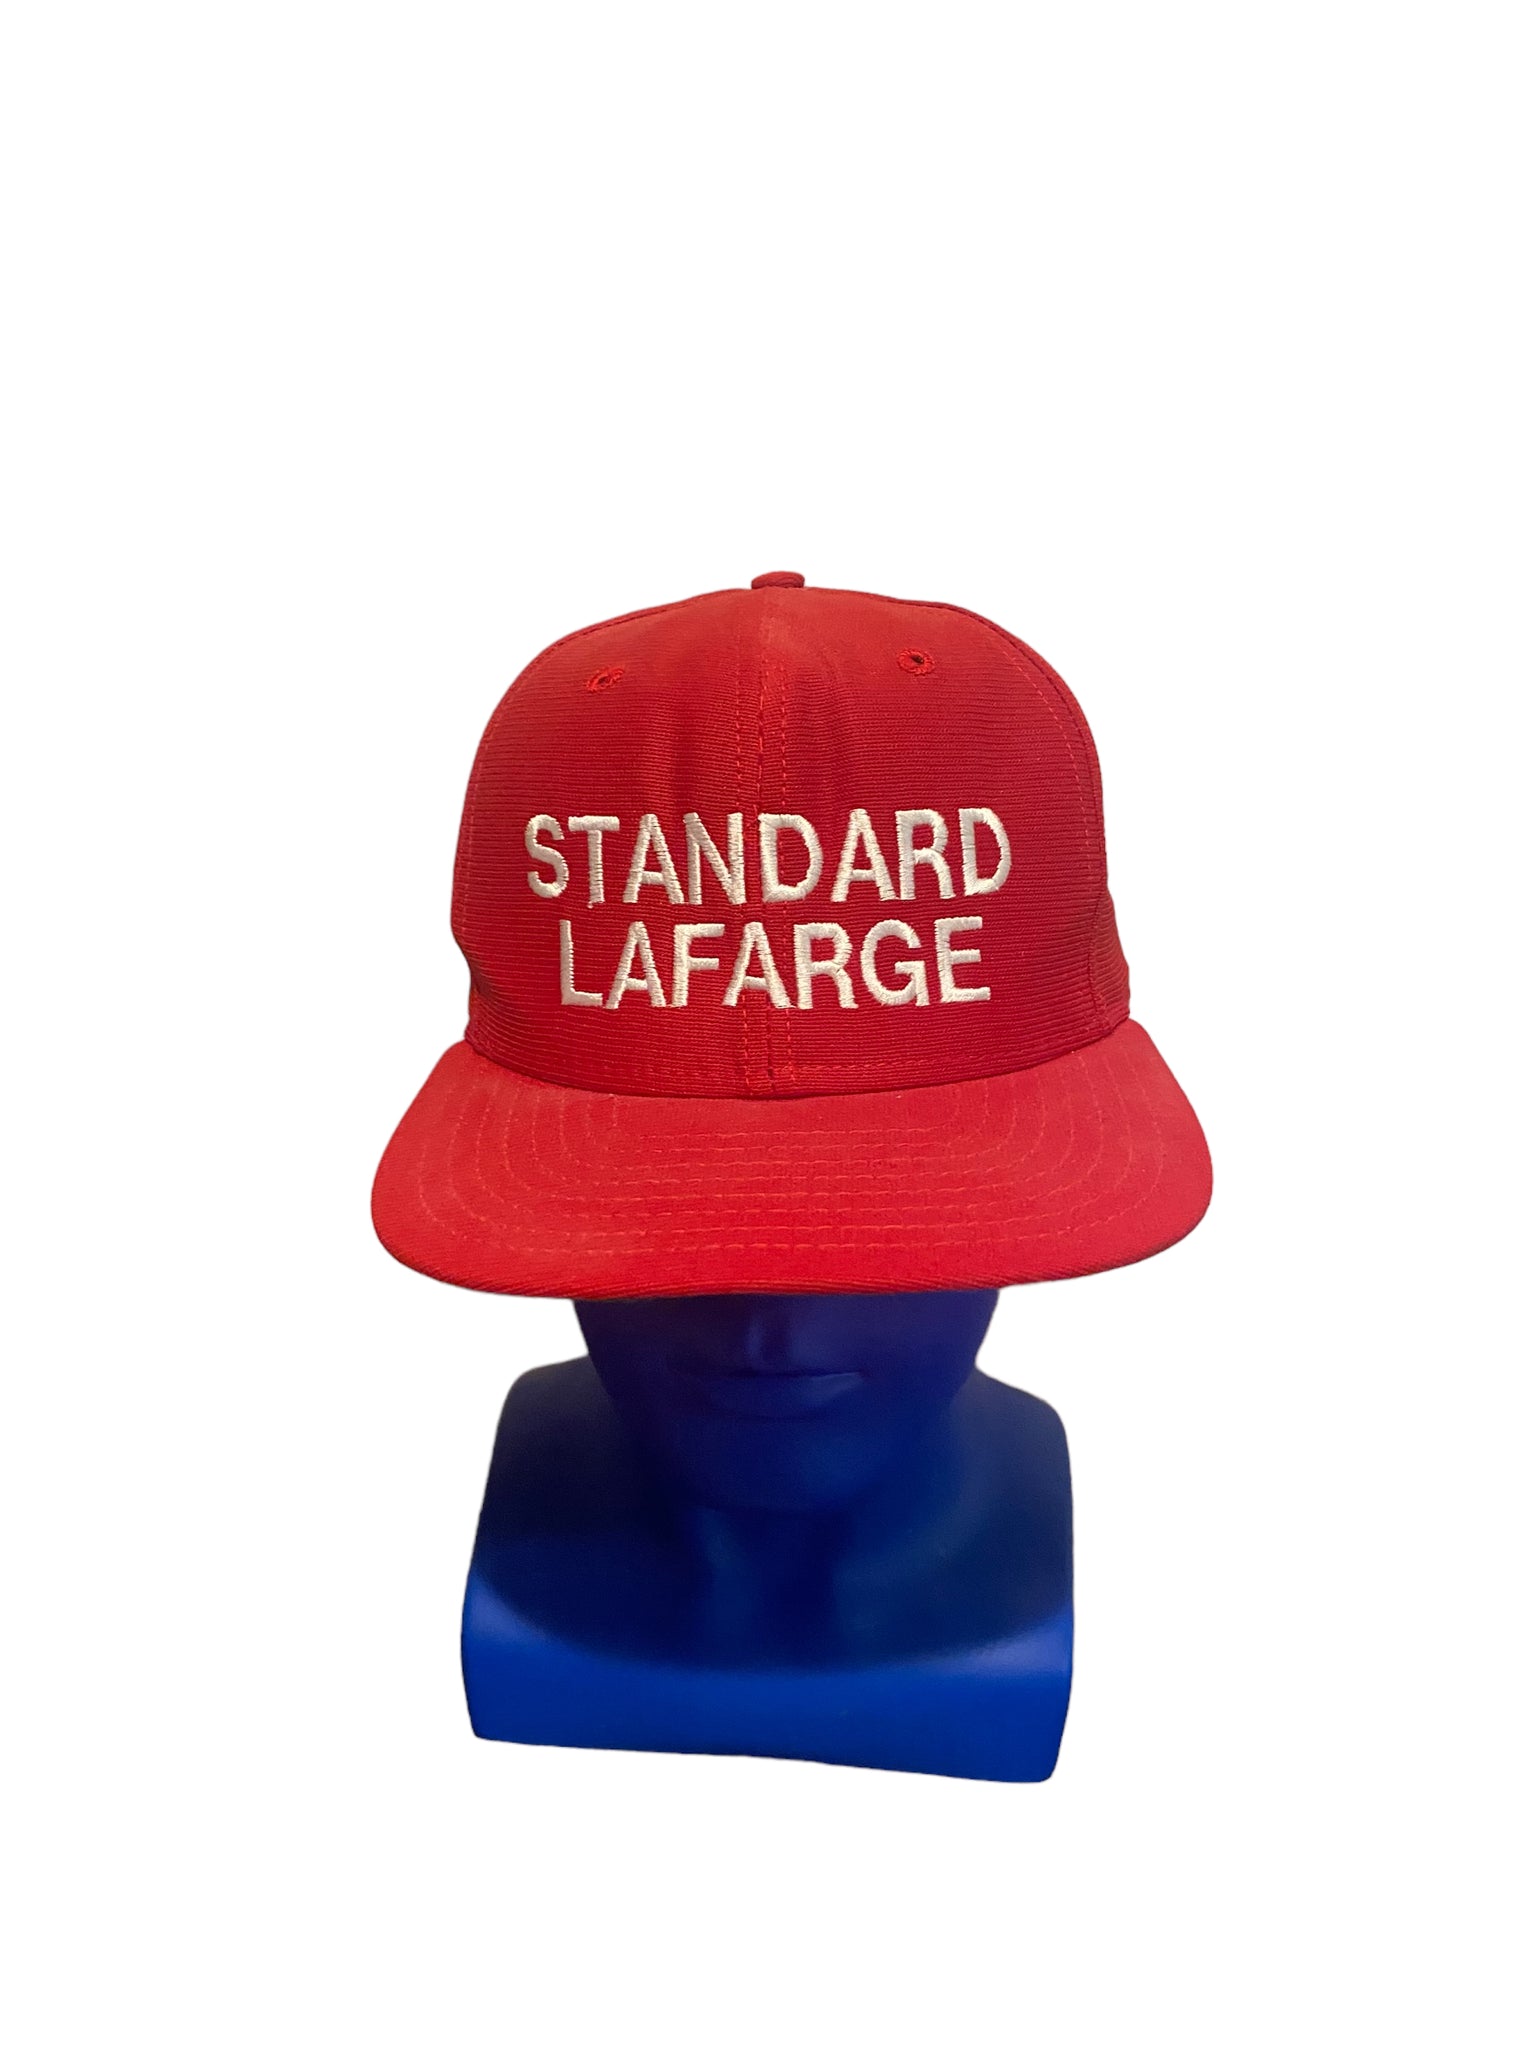 vintage new era dupont visor pro model standard lafarge script snapback hat